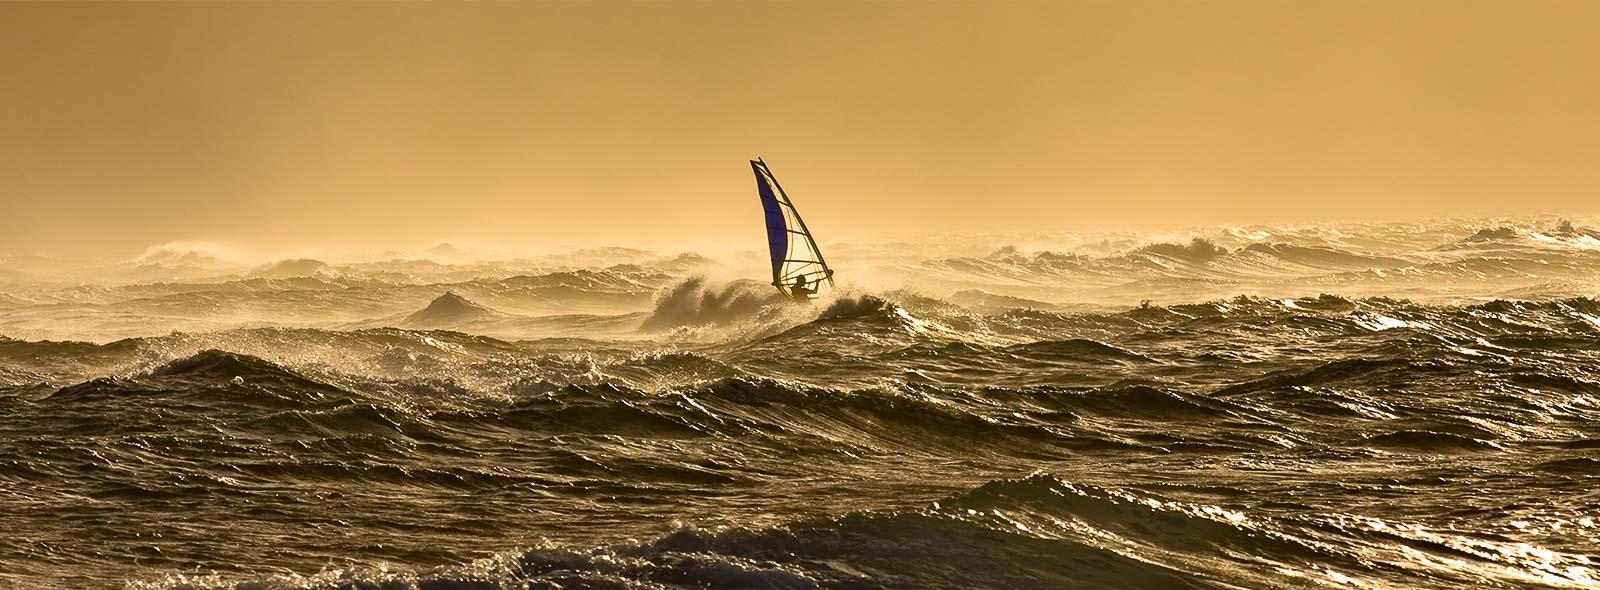 Le windsurf c'est quoi